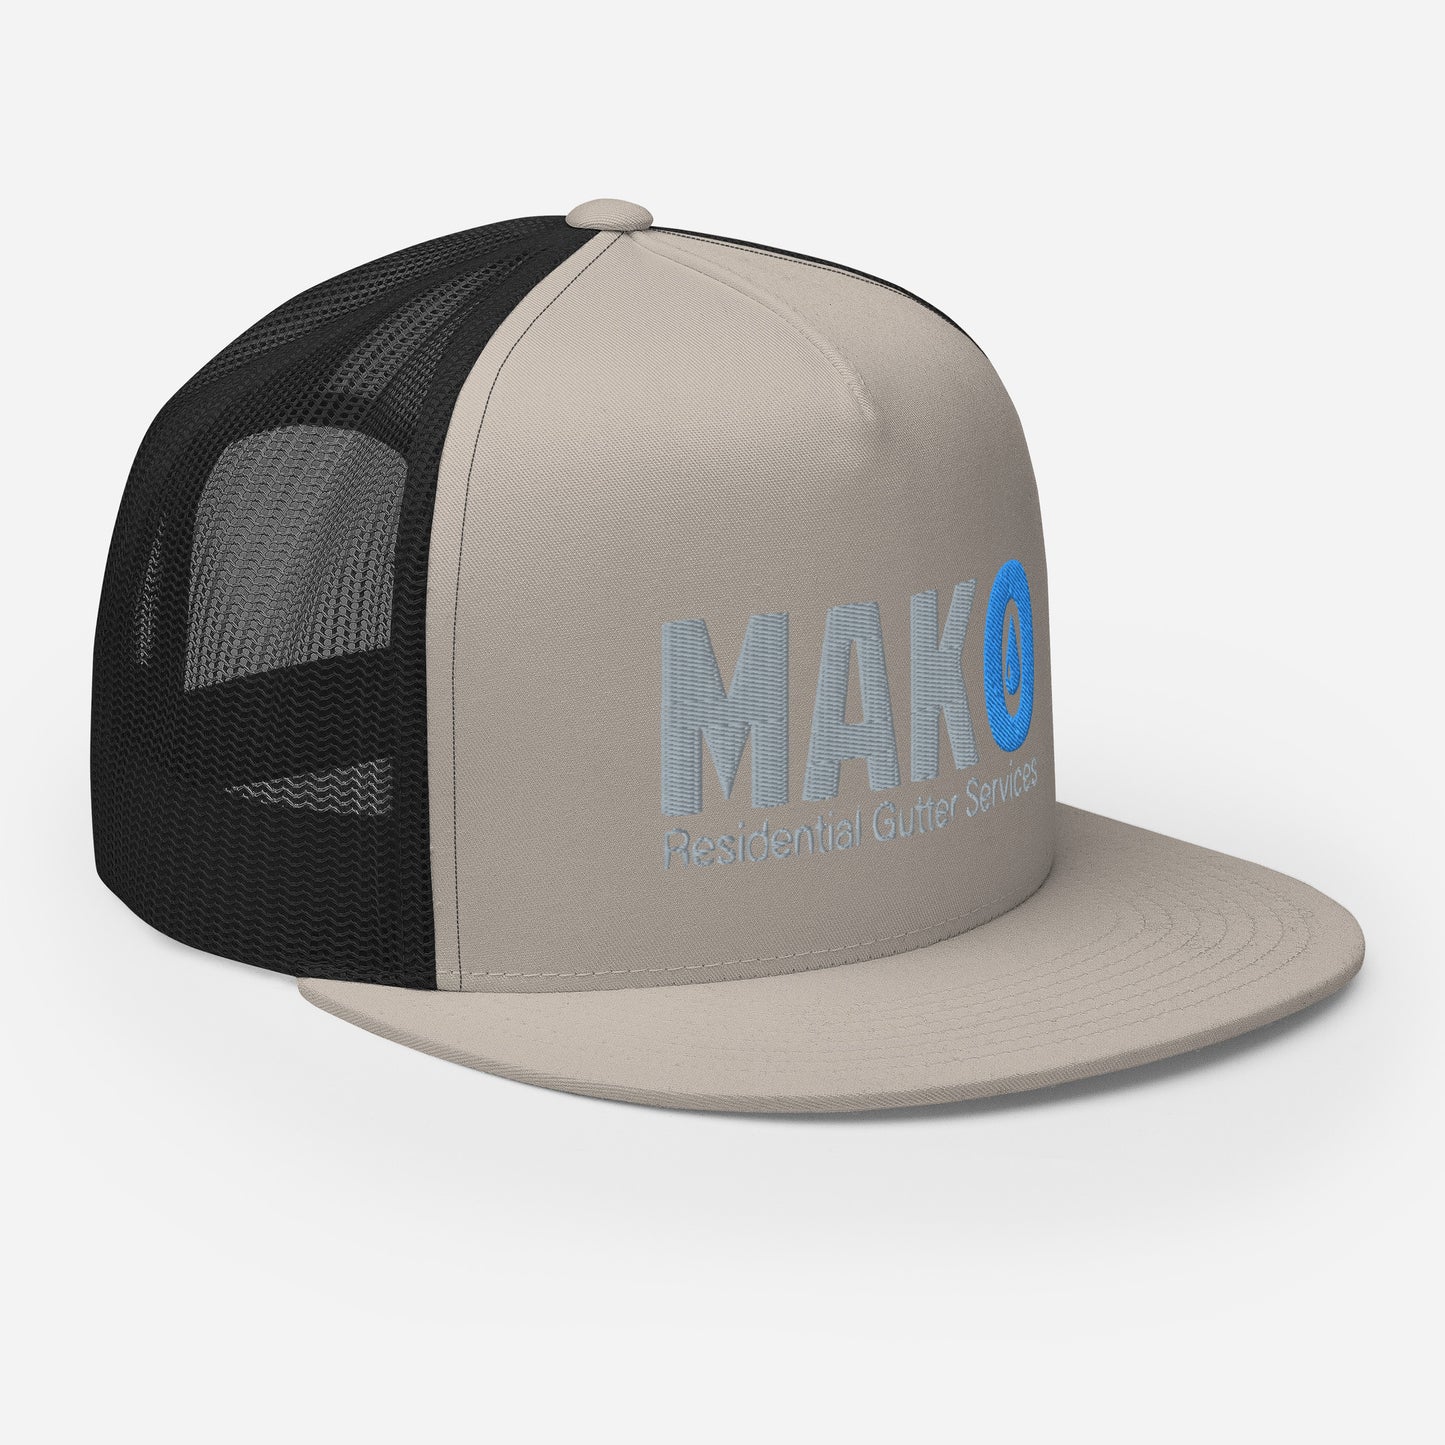 MAKO Trucker Cap